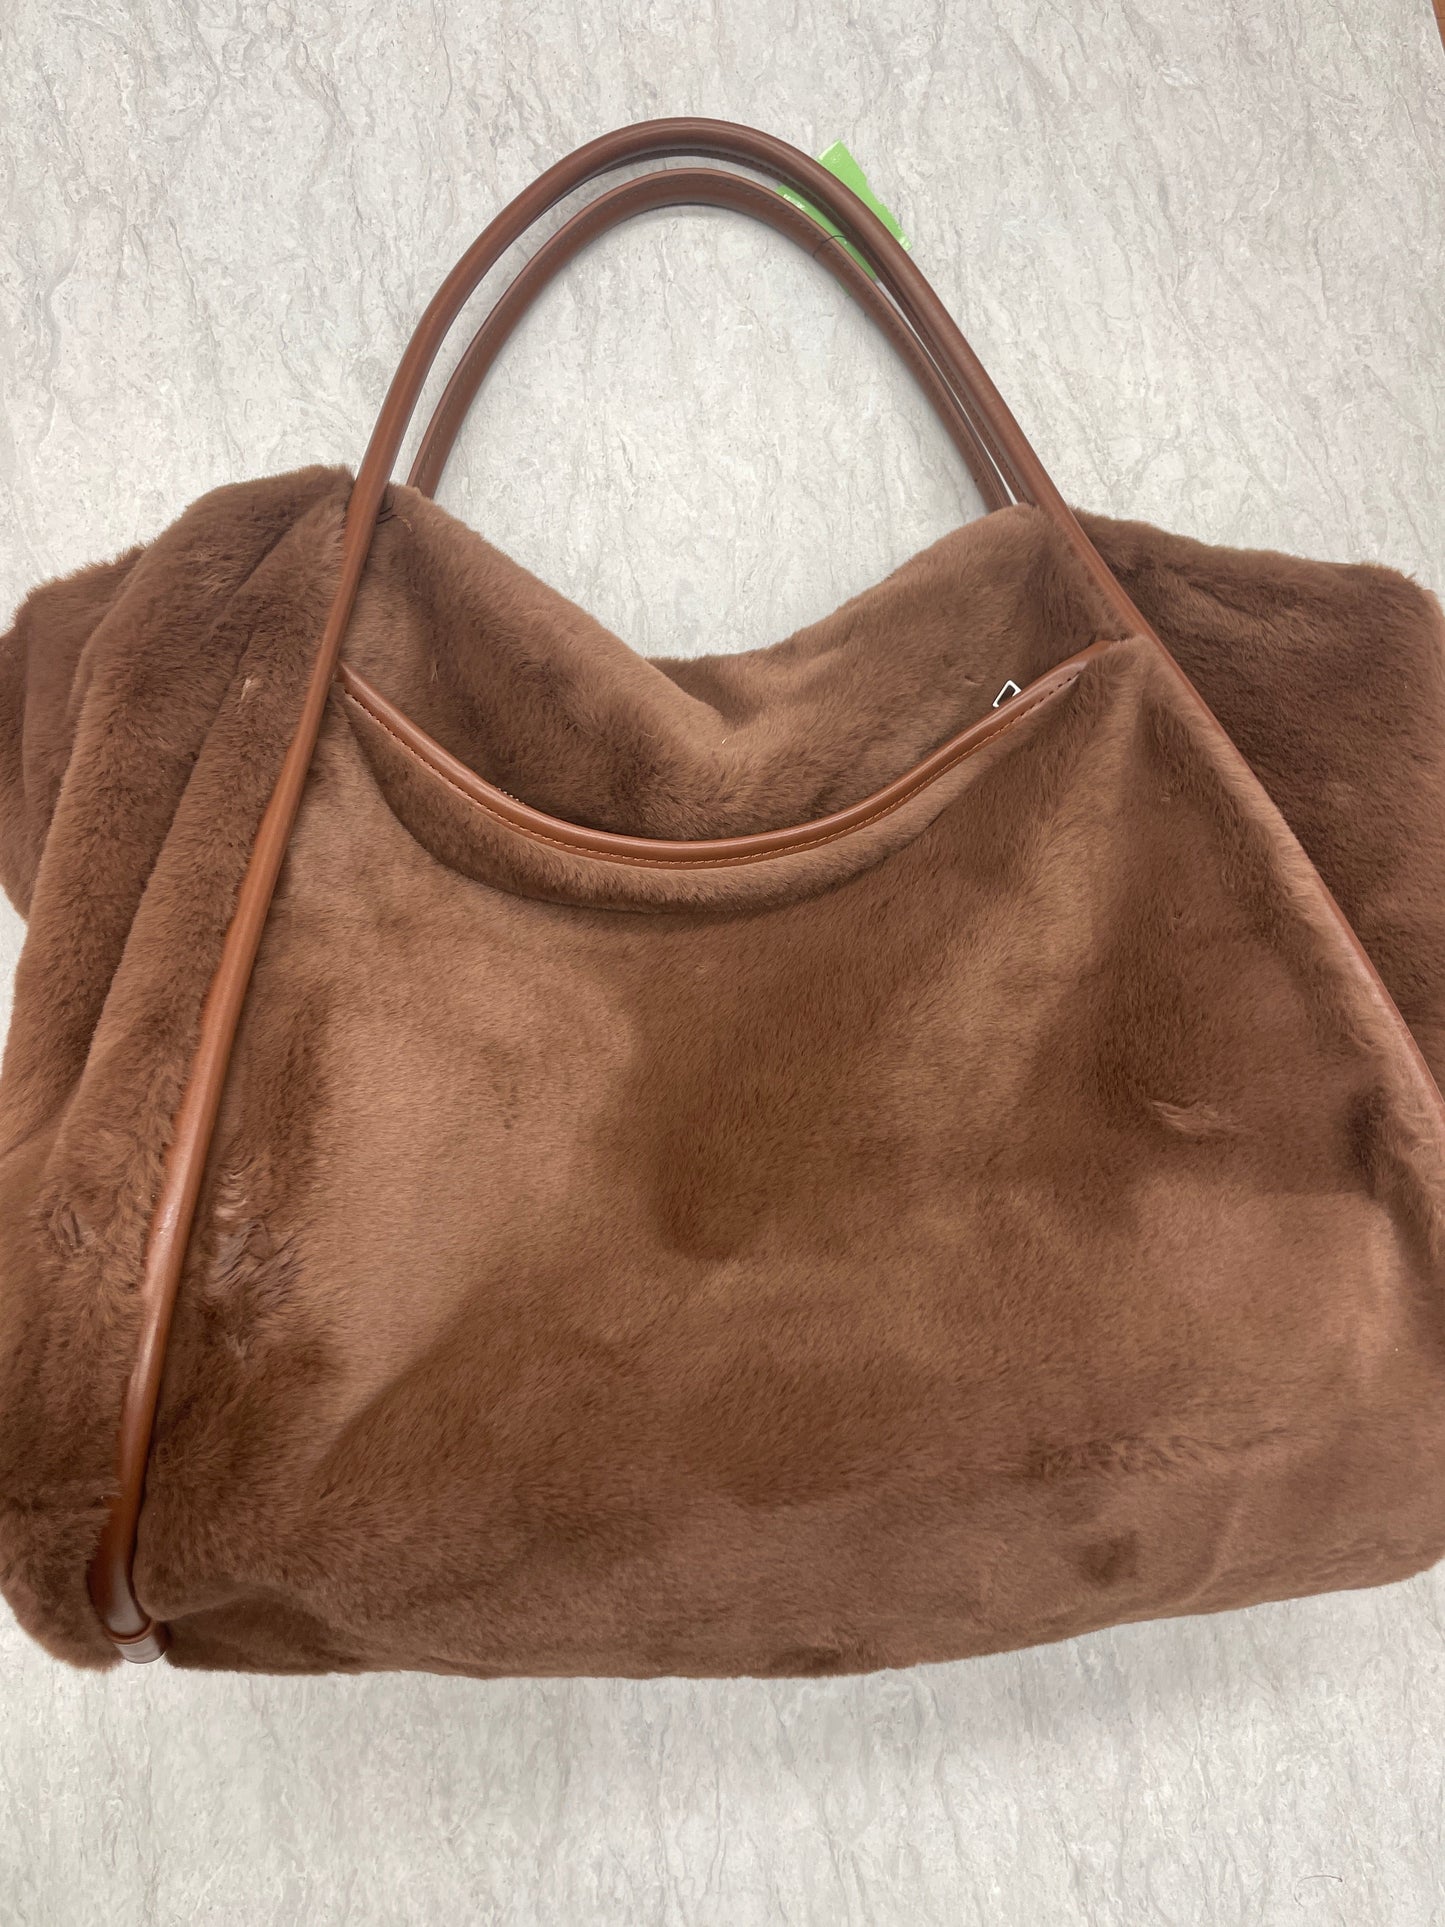 Handbag Designer By Alo  Size: Large